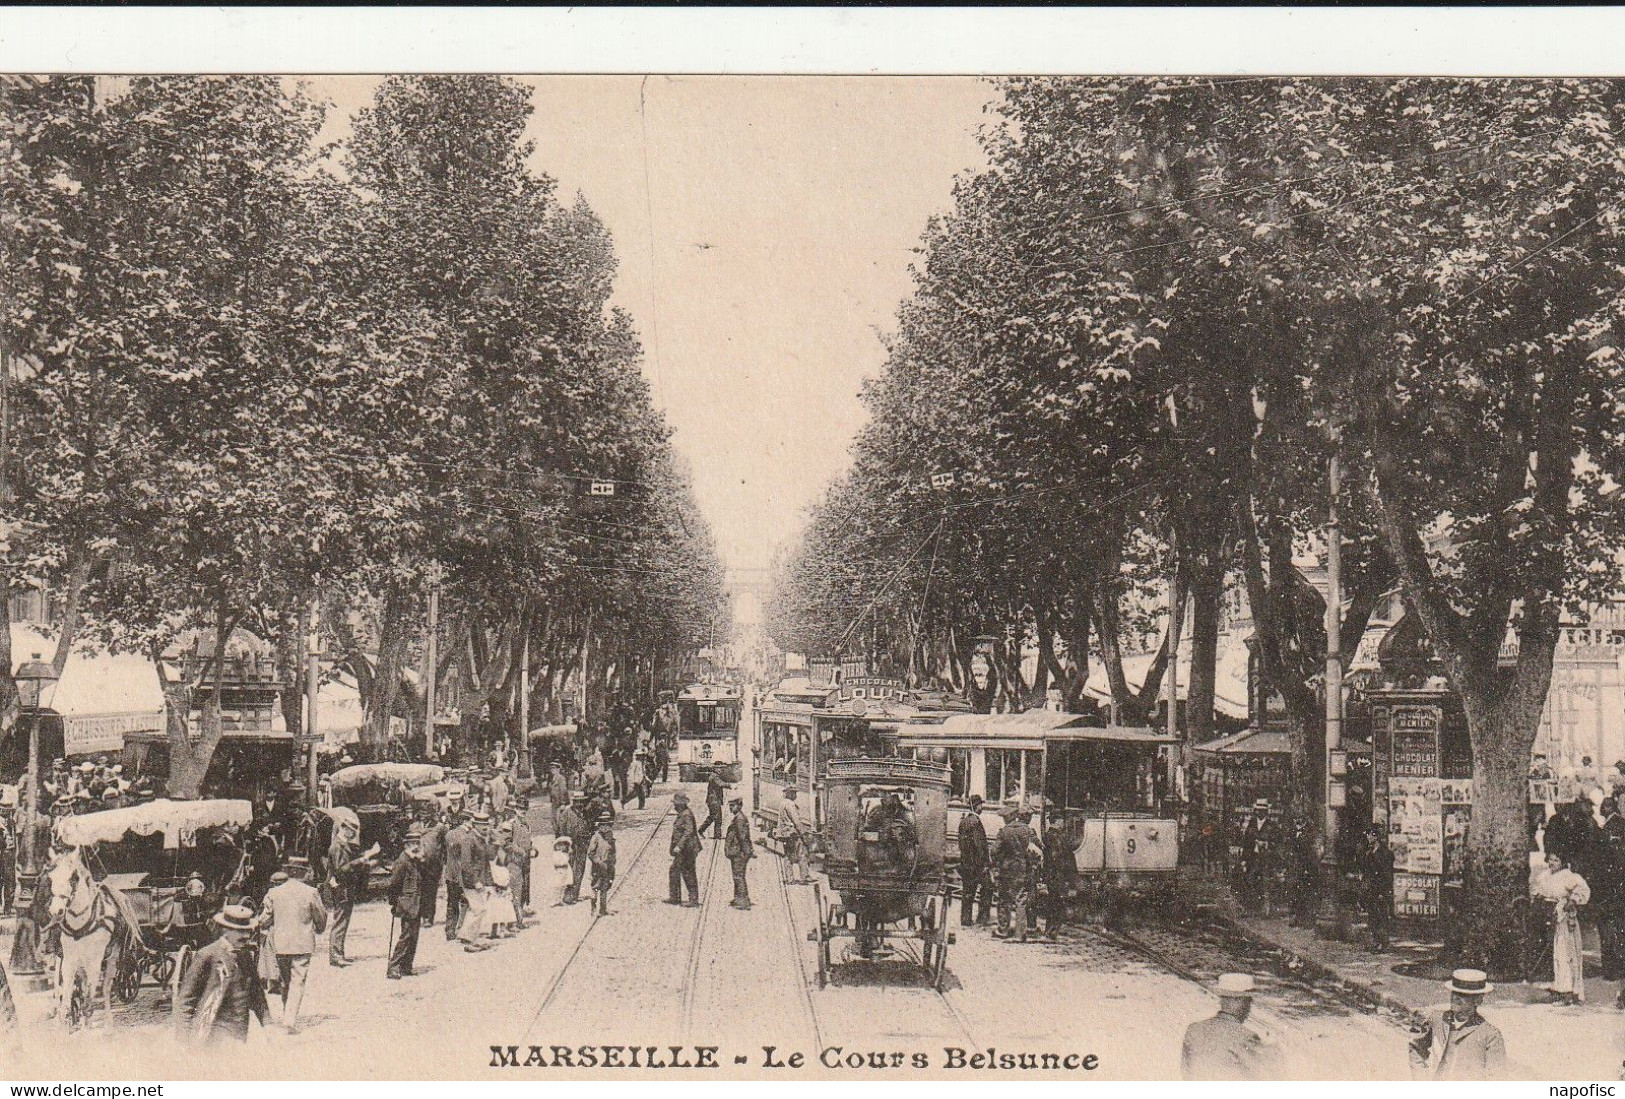 13-Marseille Le Cours Belsunce - Canebière, Centre Ville